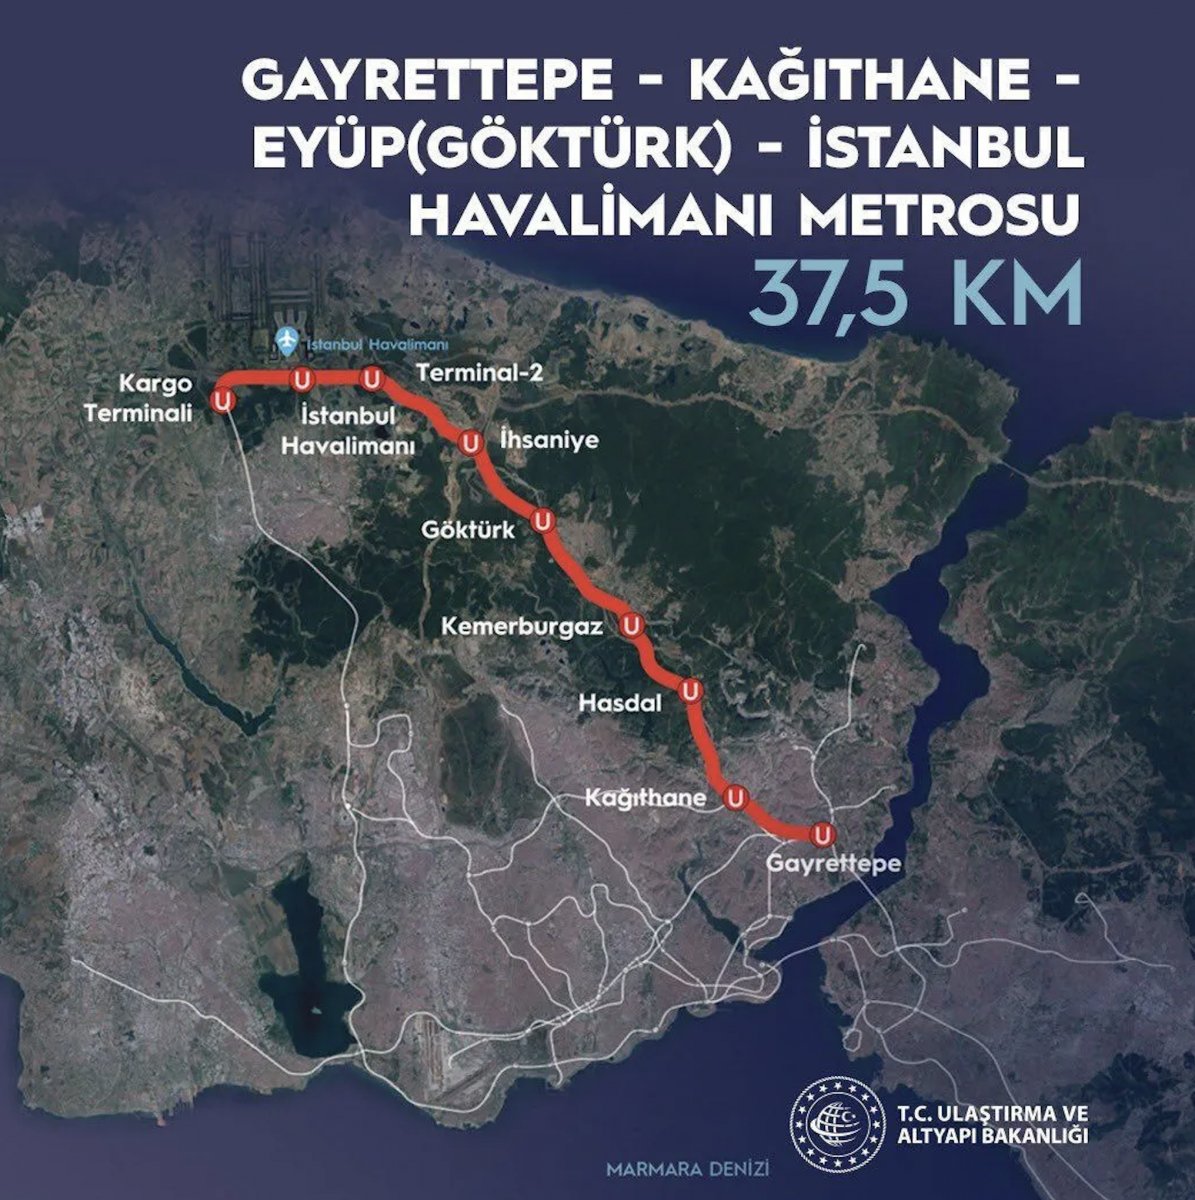 Gayrettepe-İstanbul Havalimanı metro hattında yüzde 98 ilerleme kaydedildi #1